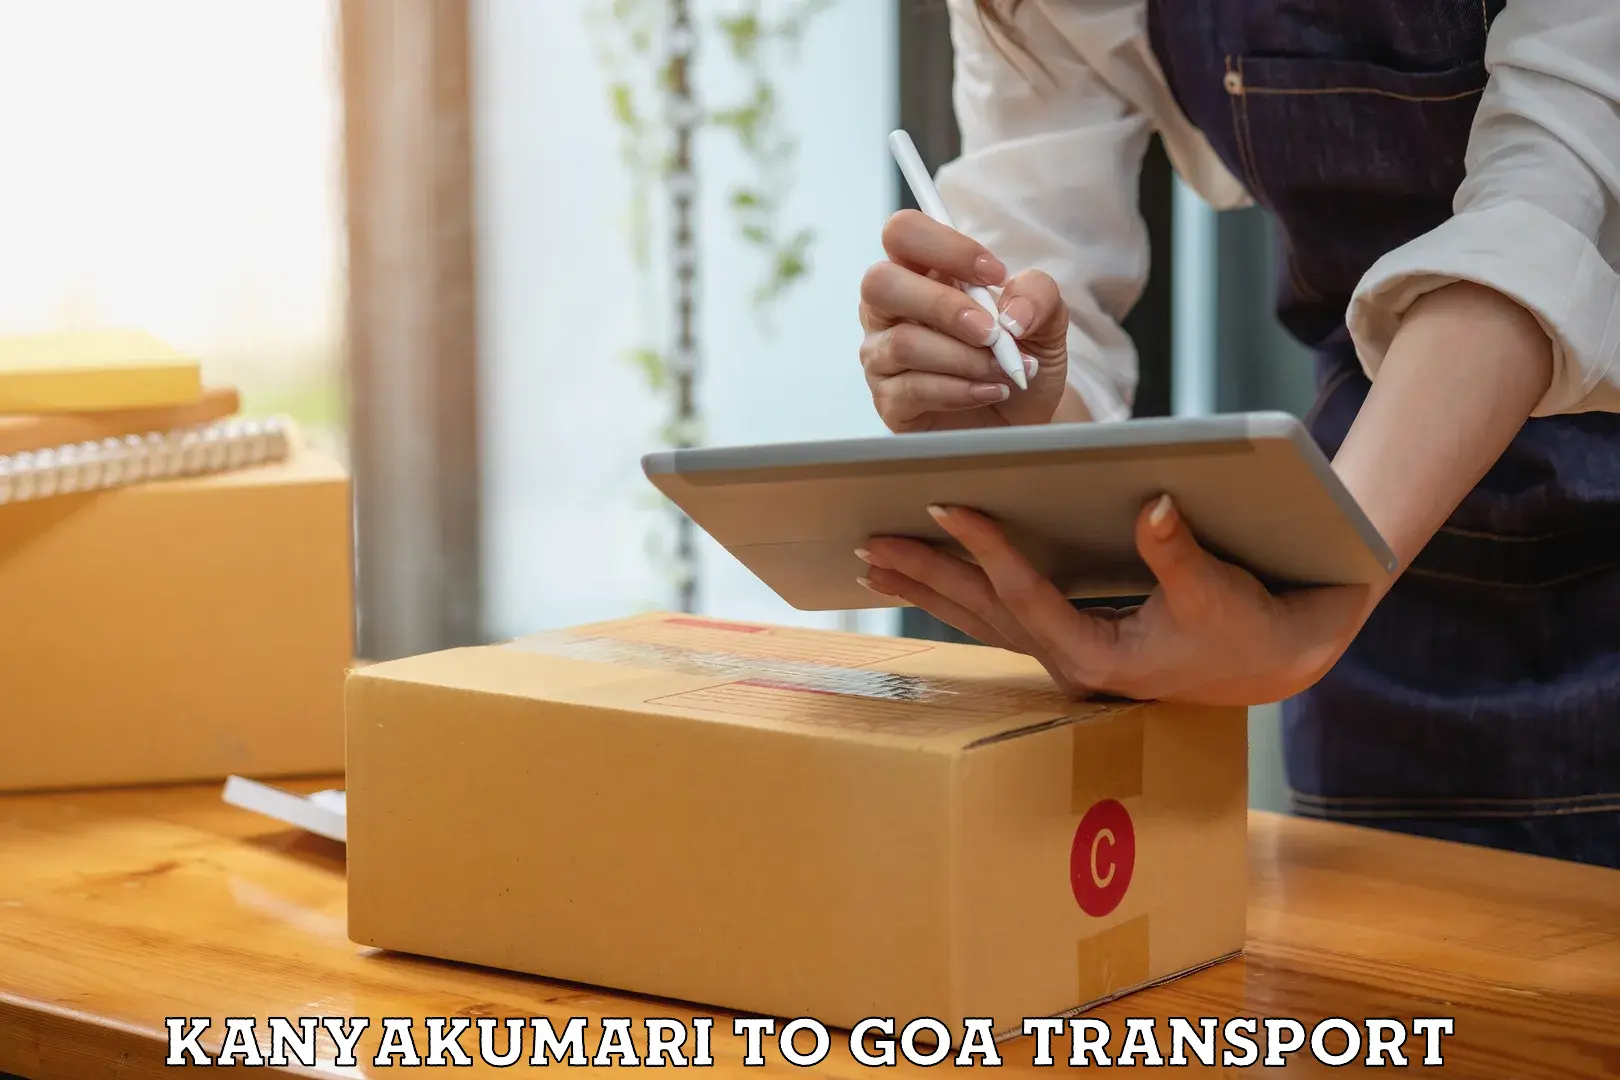 Container transportation services Kanyakumari to IIT Goa